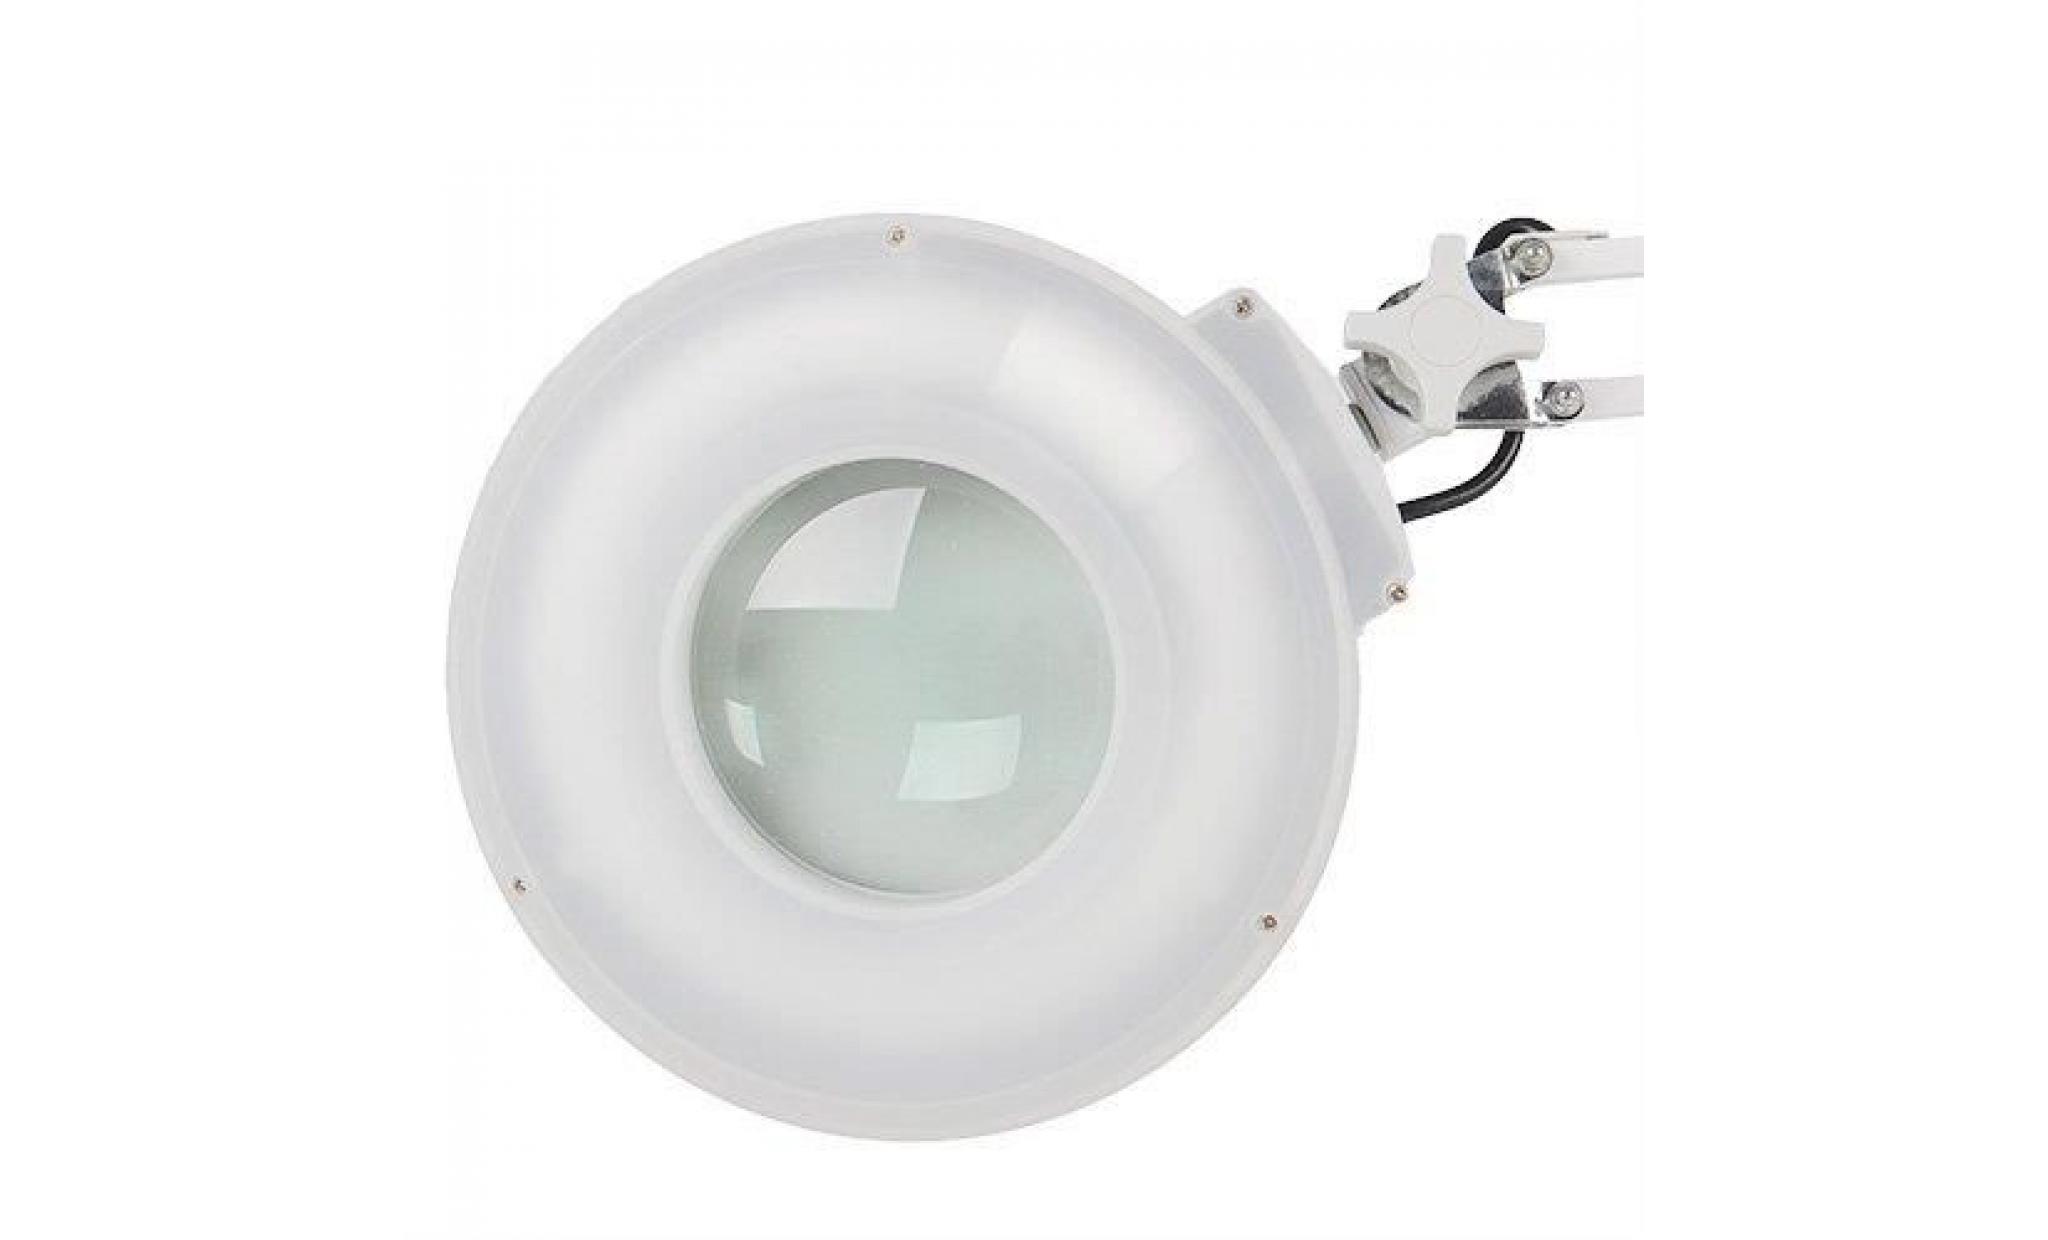 22w lampe loupe de table esthétique 8 dioptries grossissement avec eclairage tube néon daylight fluorescent pas cher